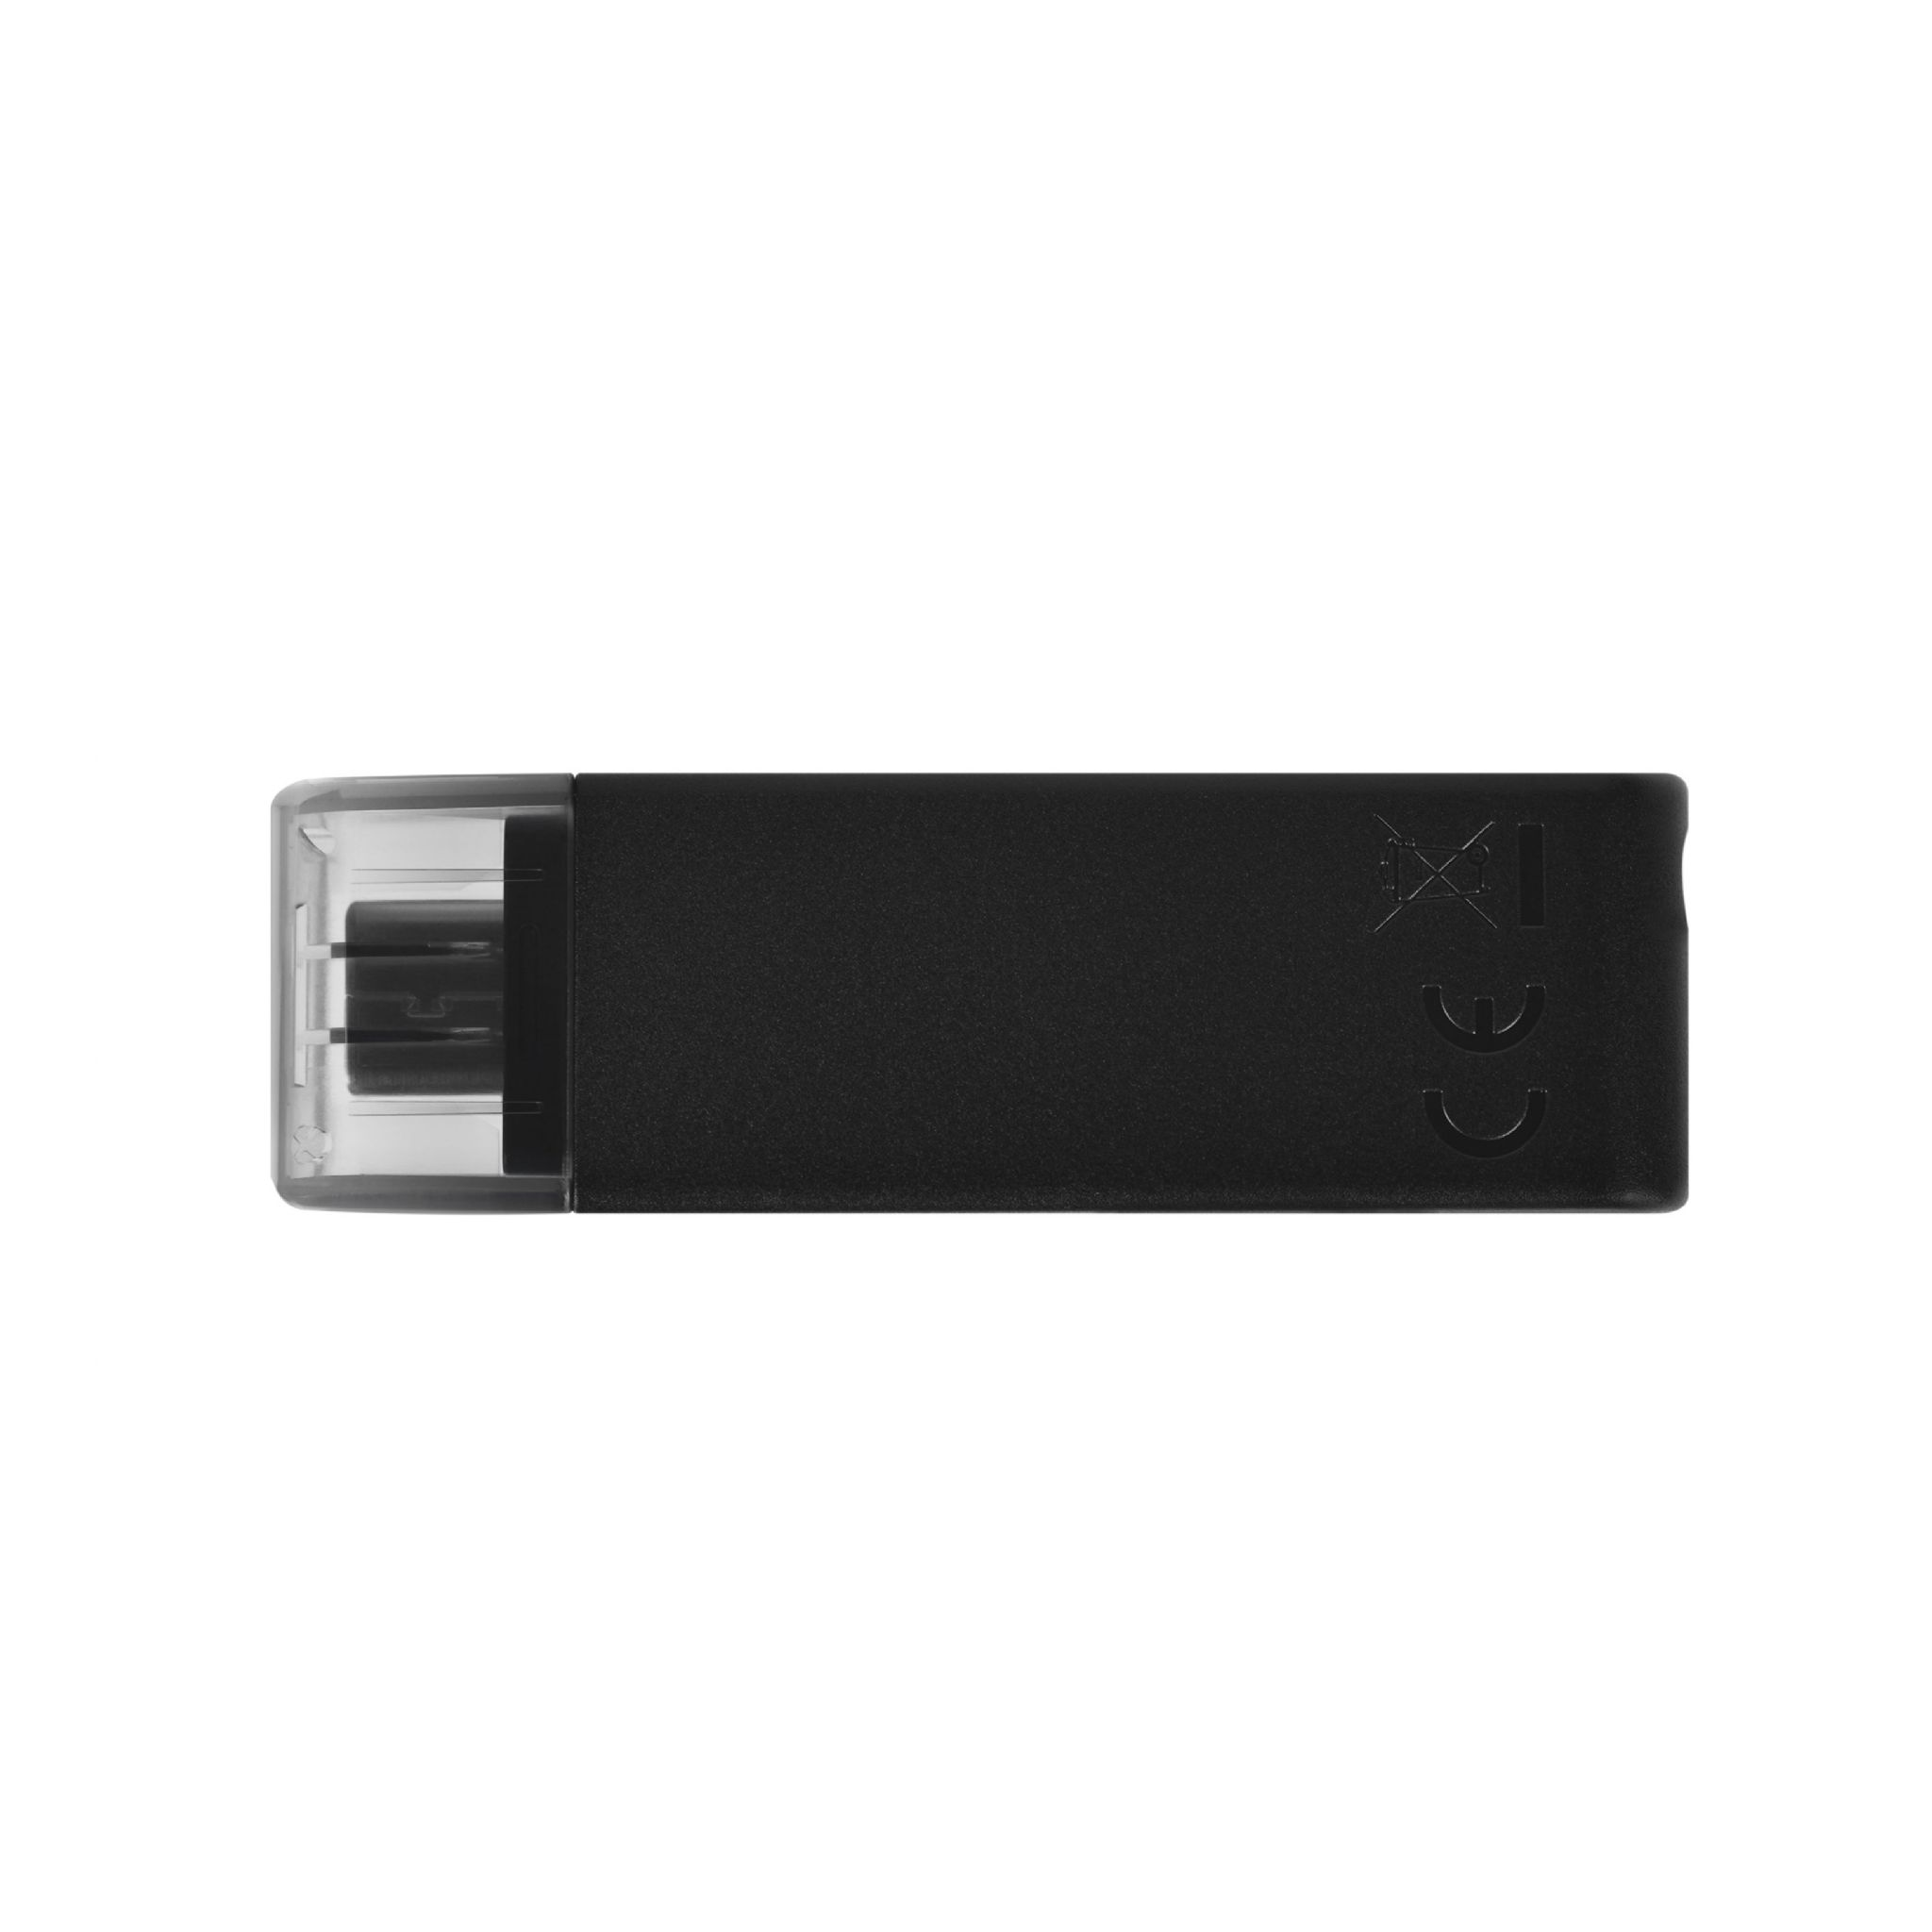 KINGSTON Stick DT70/128GB (schwarz, USB 128 GB)